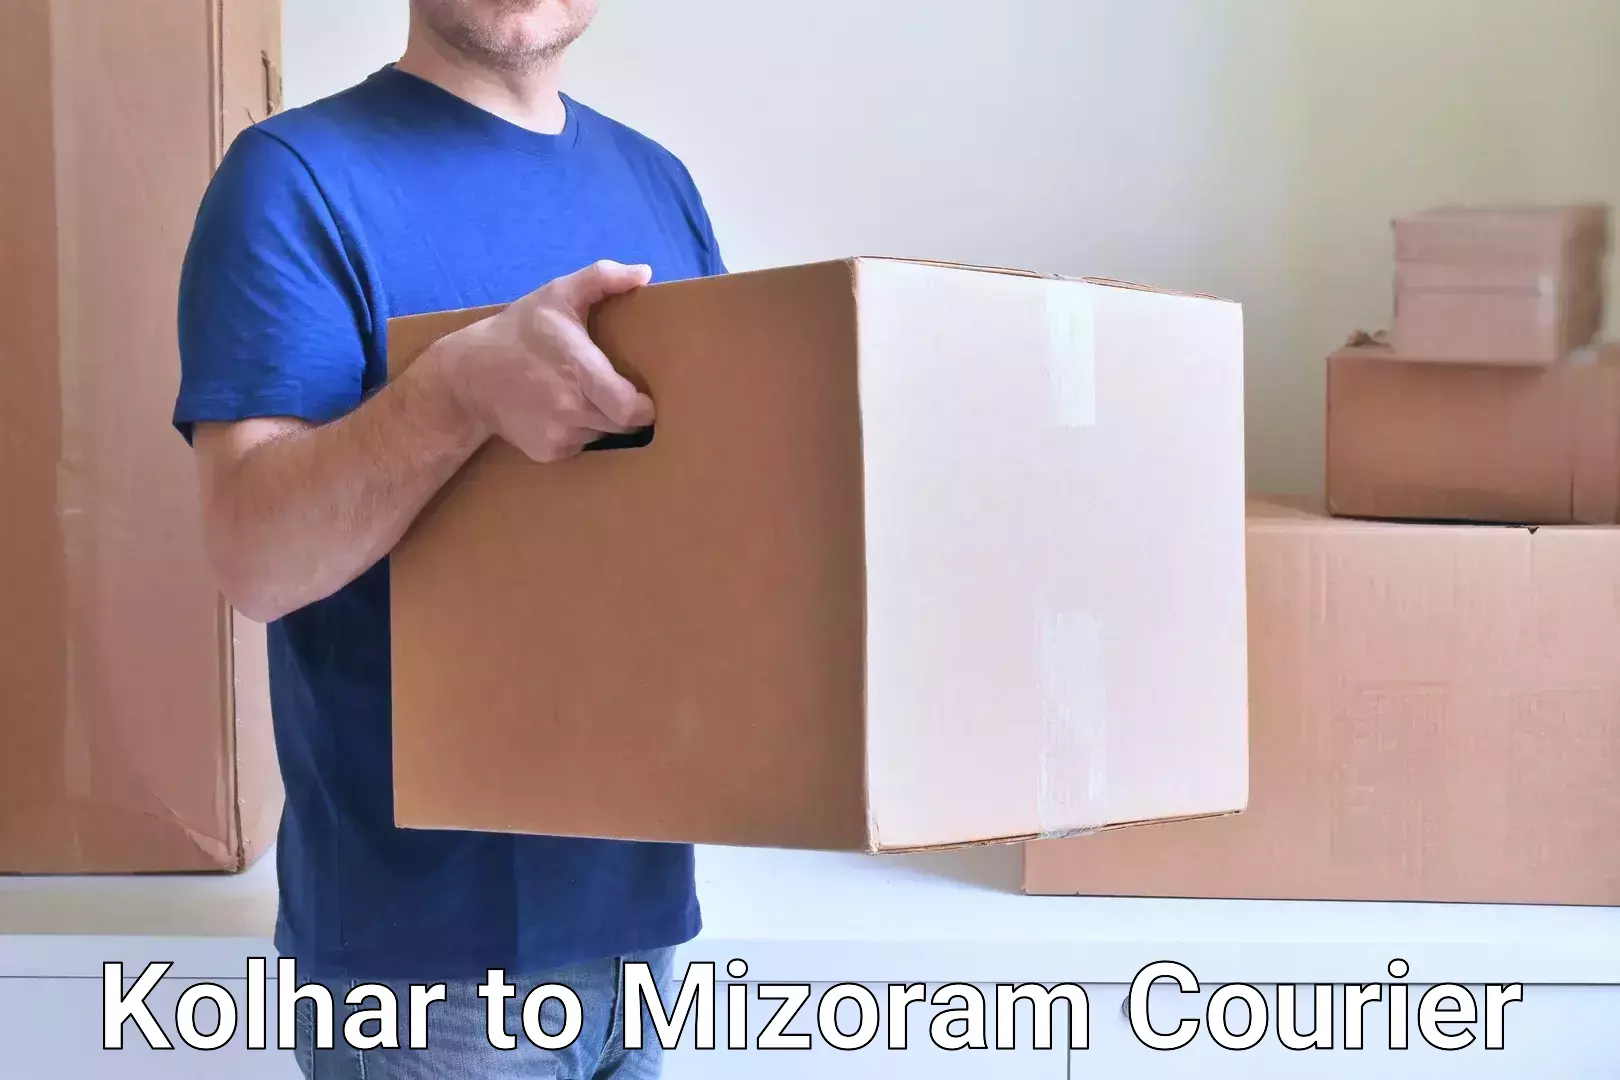 Reliable courier service Kolhar to Mizoram